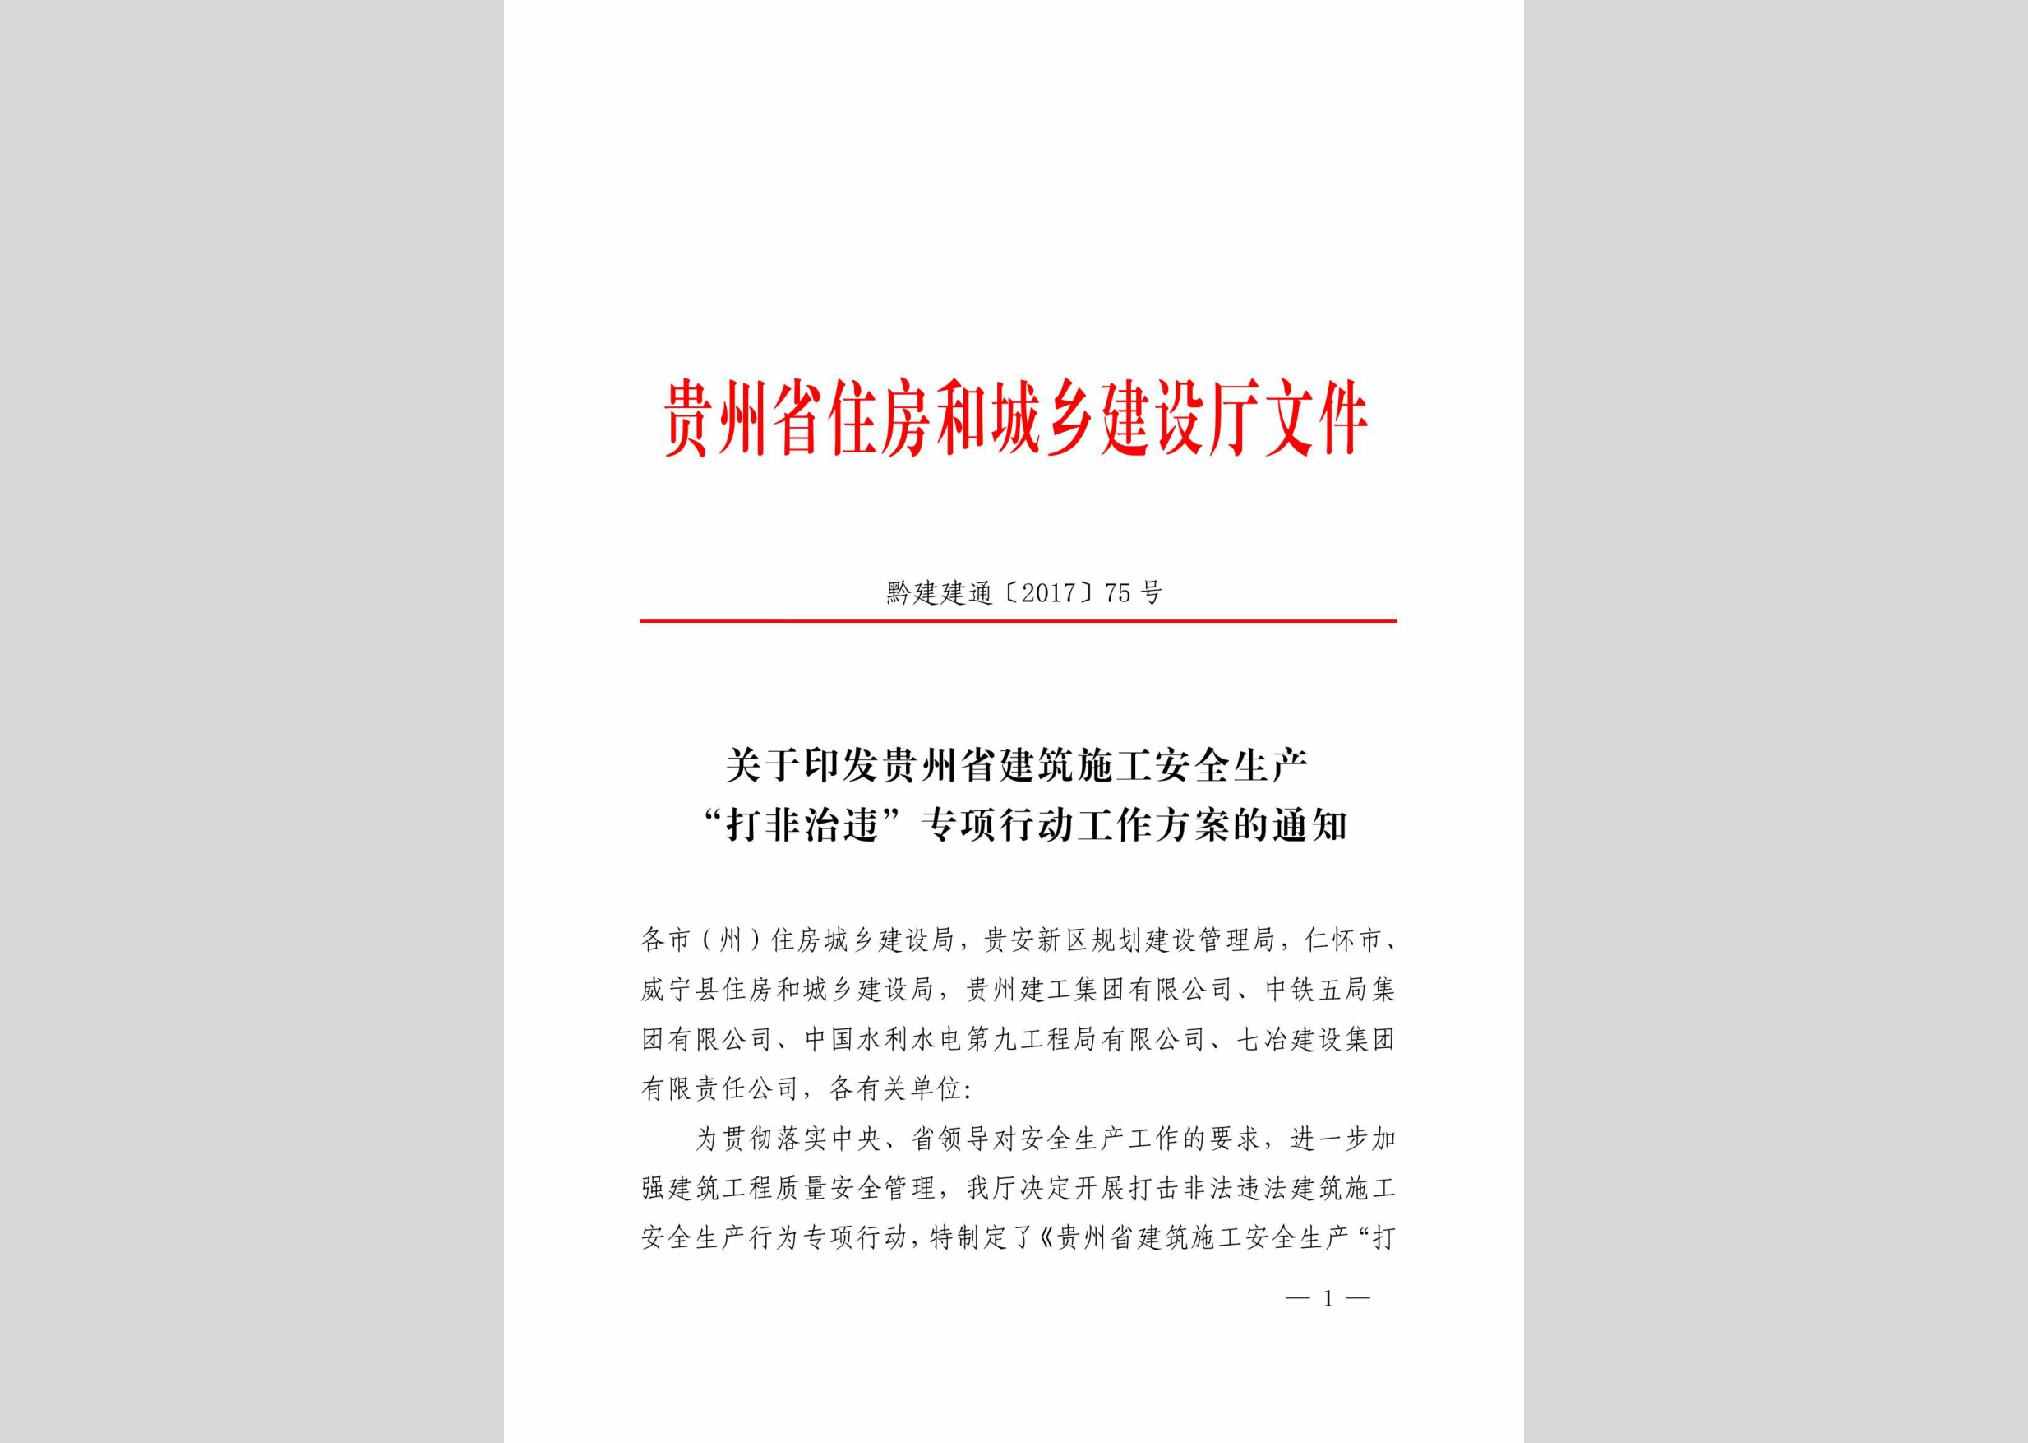 黔建建通[2017]75号：关于印发贵州省建筑施工安全生产“打非治违”专项行动工作方案的通知